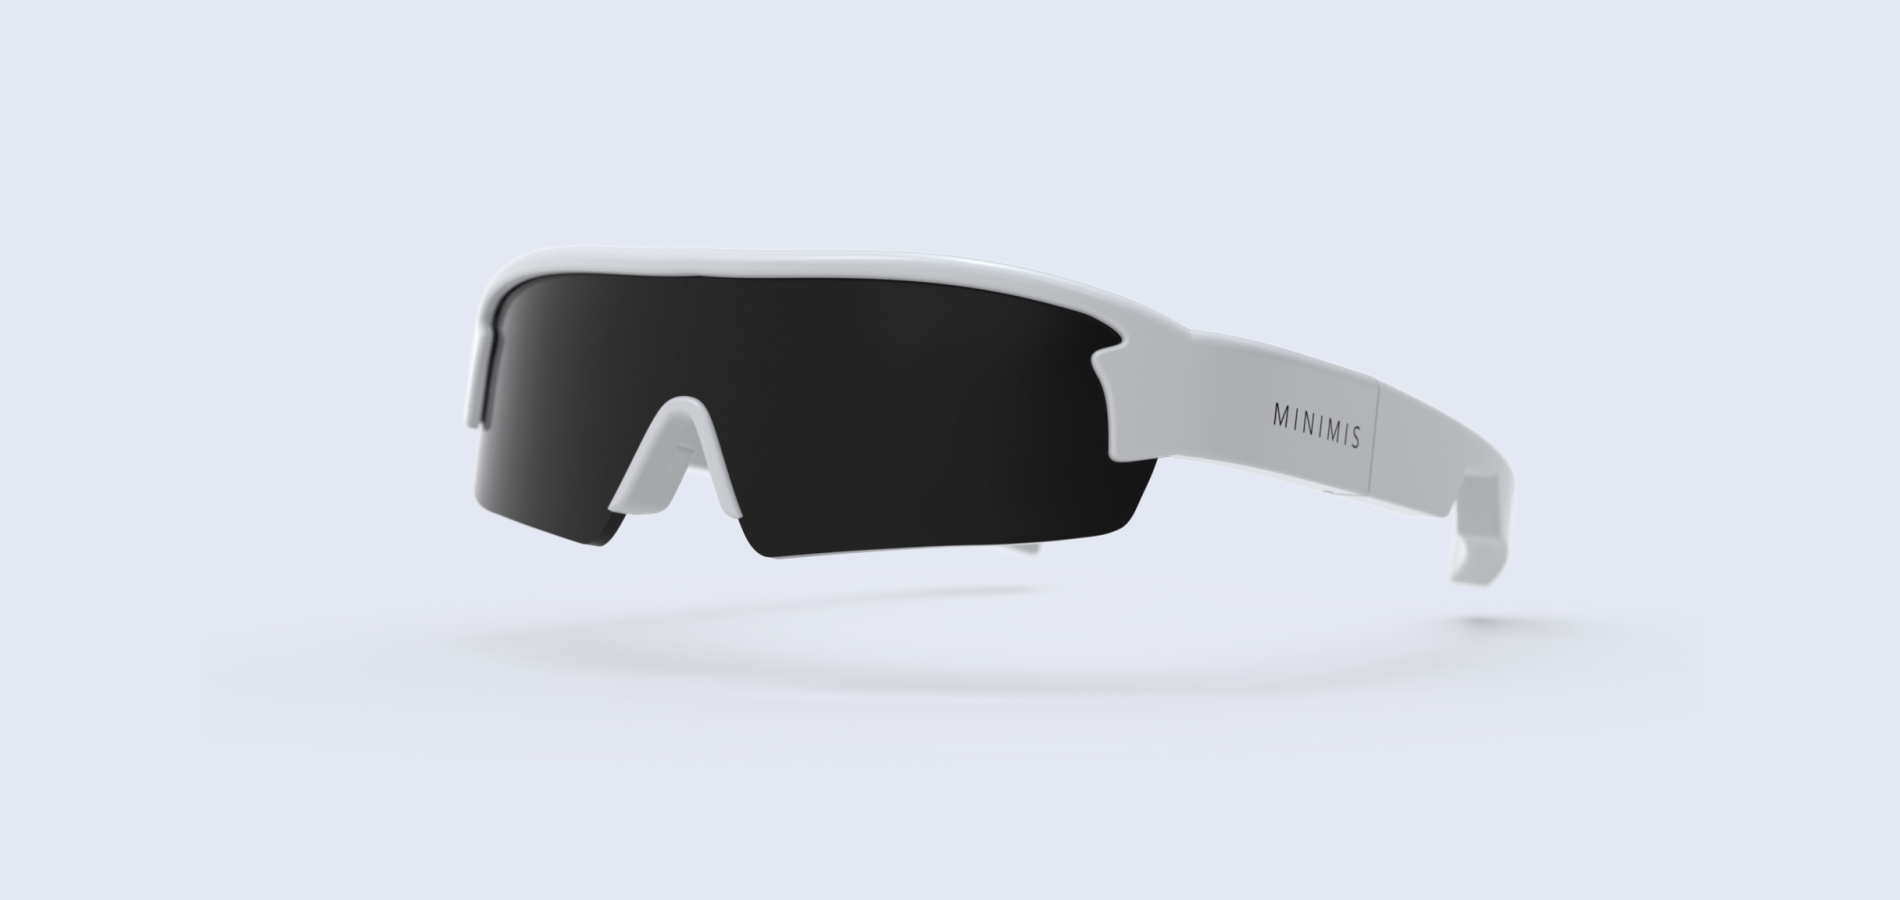 Представлены умные очки Minimis Glass для спортсменов – отразят статистику и маршрут